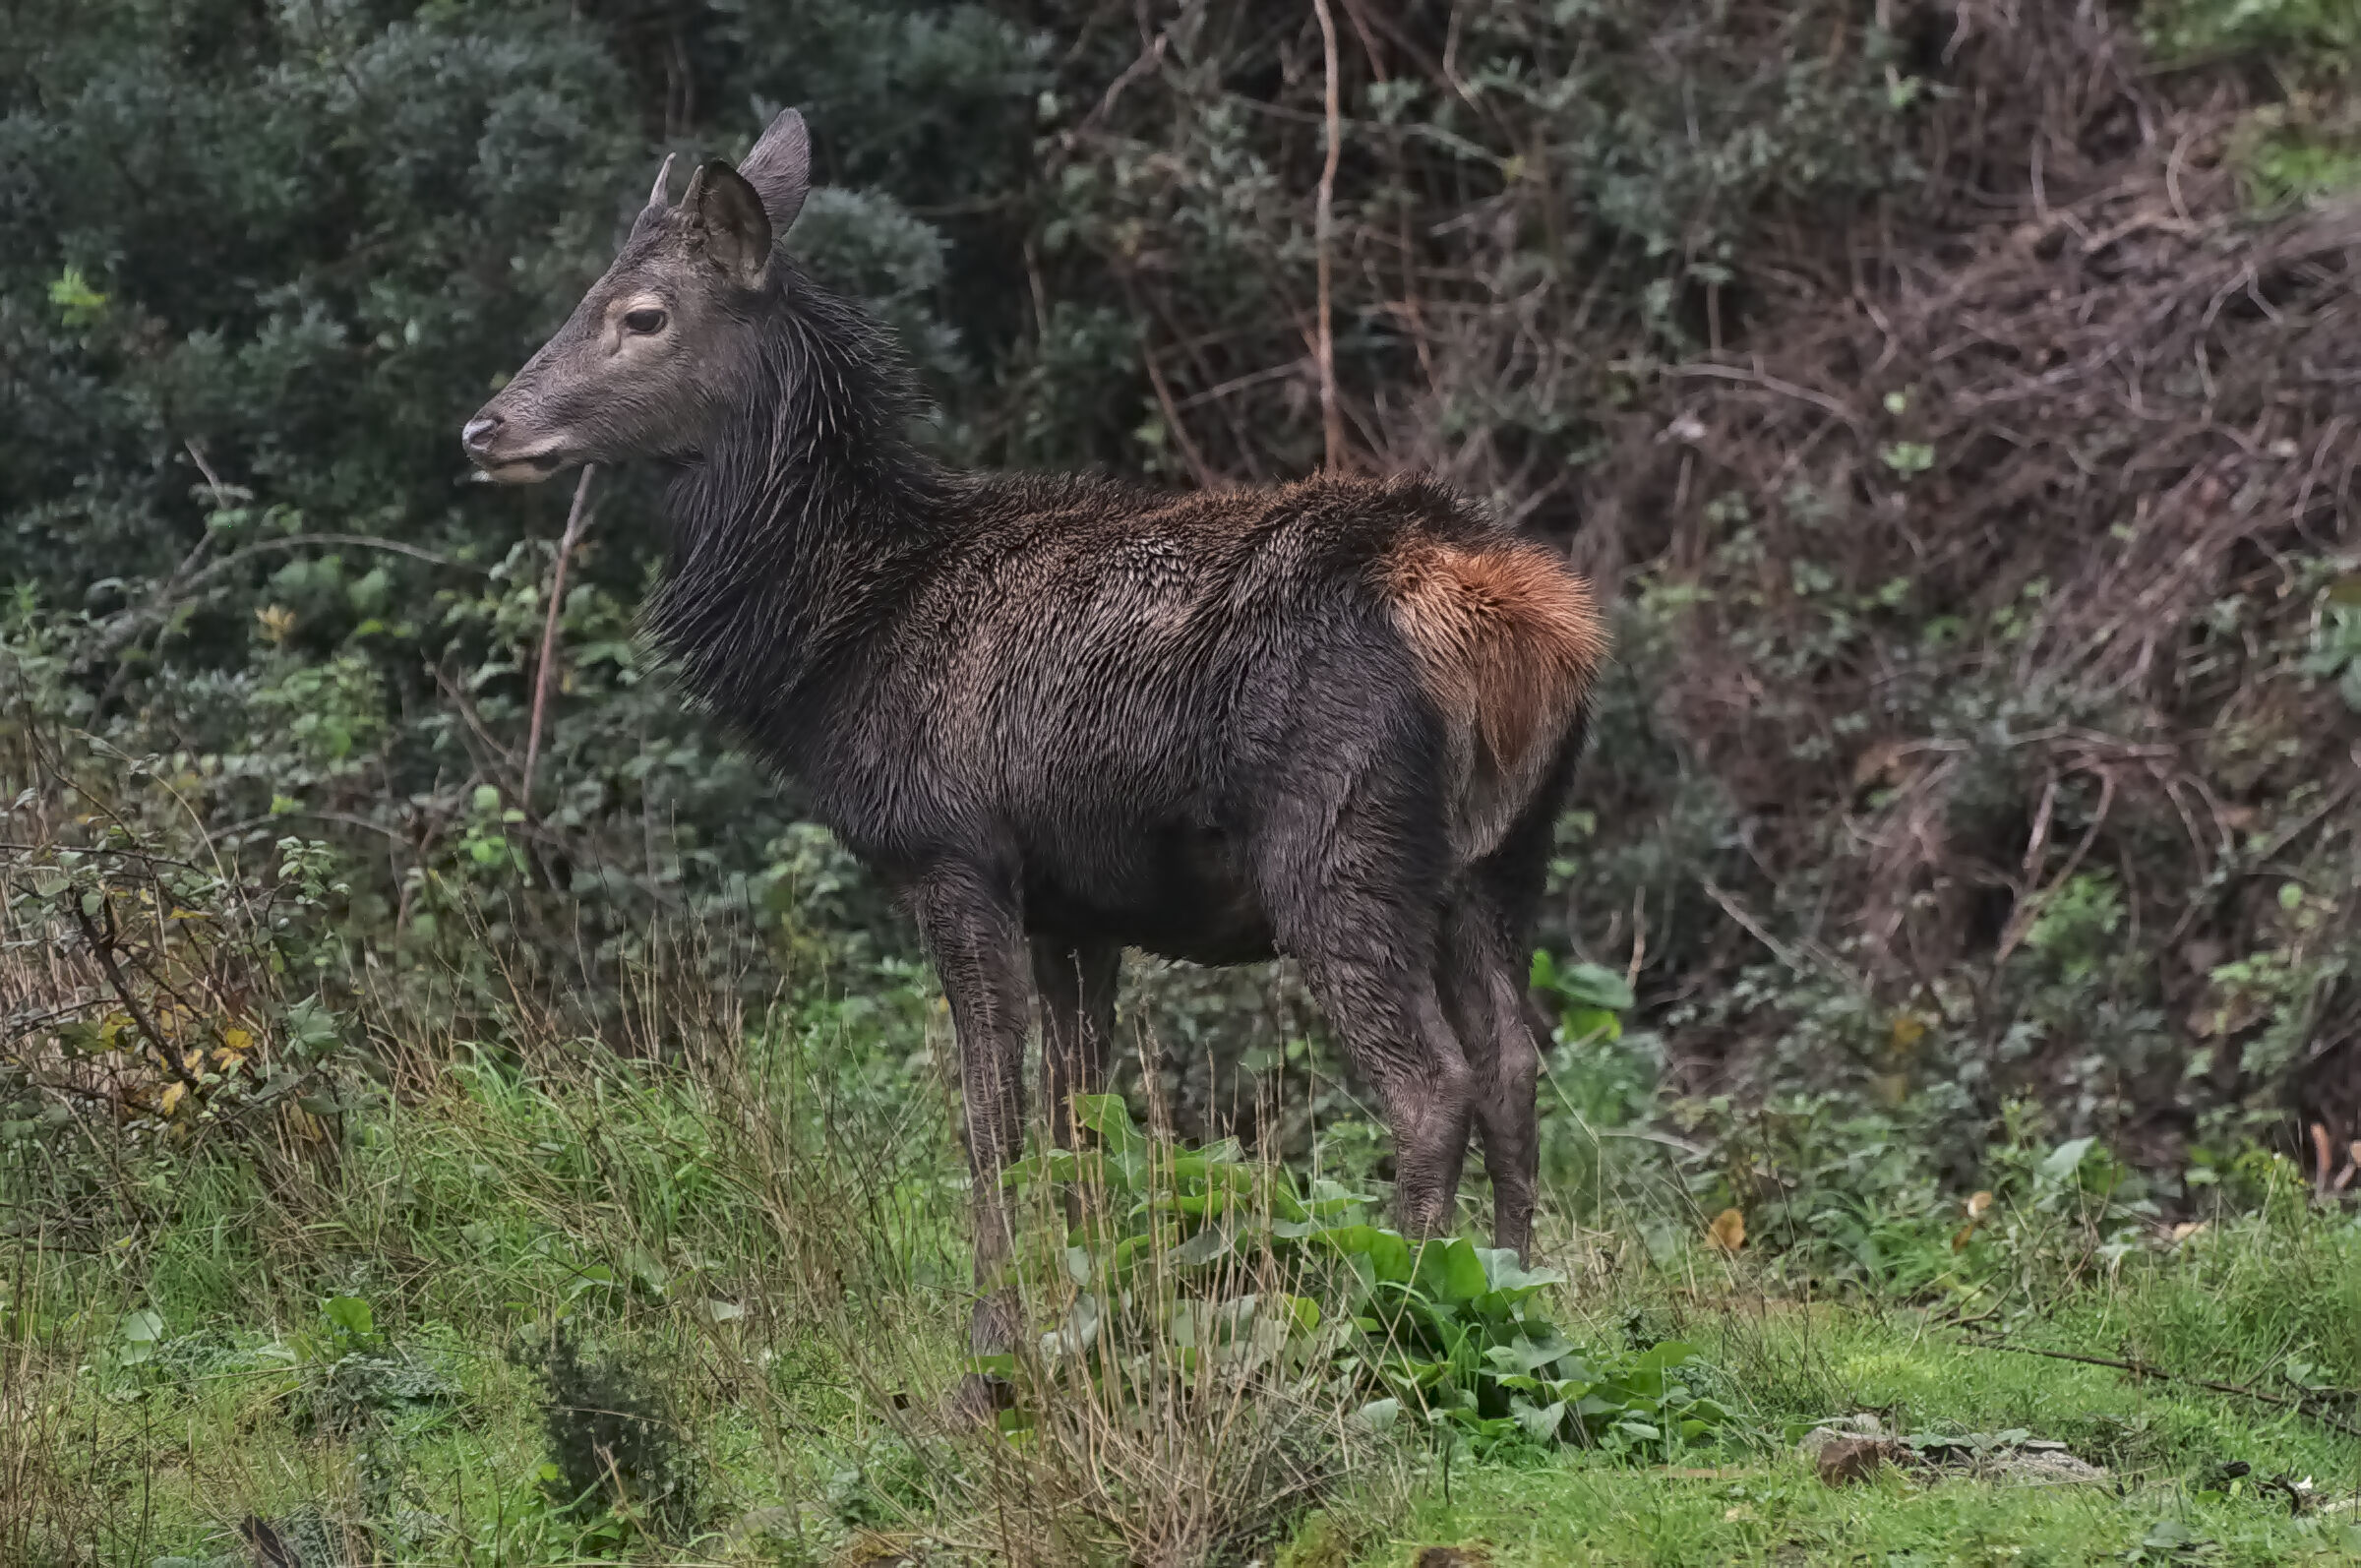 Young Sardinian deer (fusone) with winter coat...